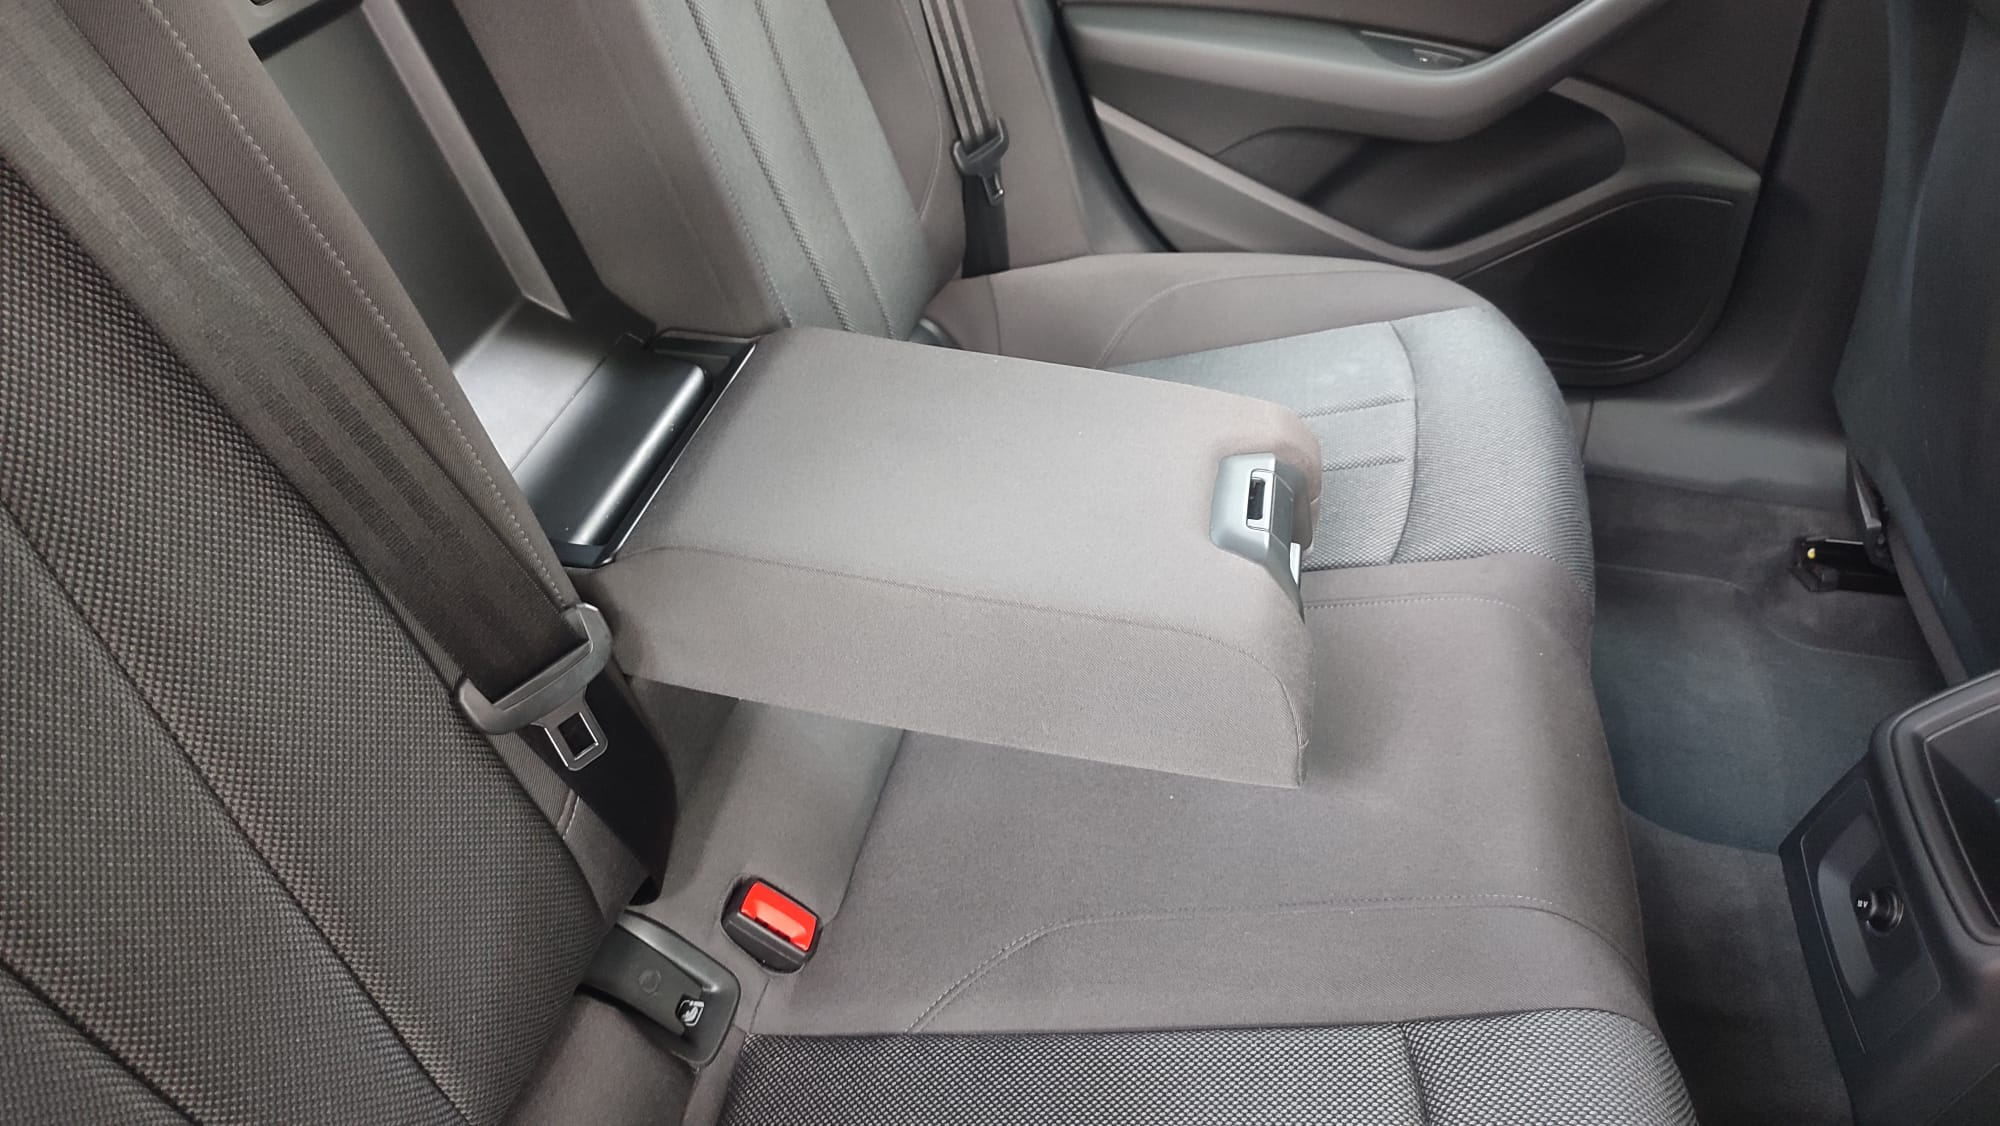 AUDI - A4 2.0 TDI Stron advanced ed - interior trasero asiento reposabrazos